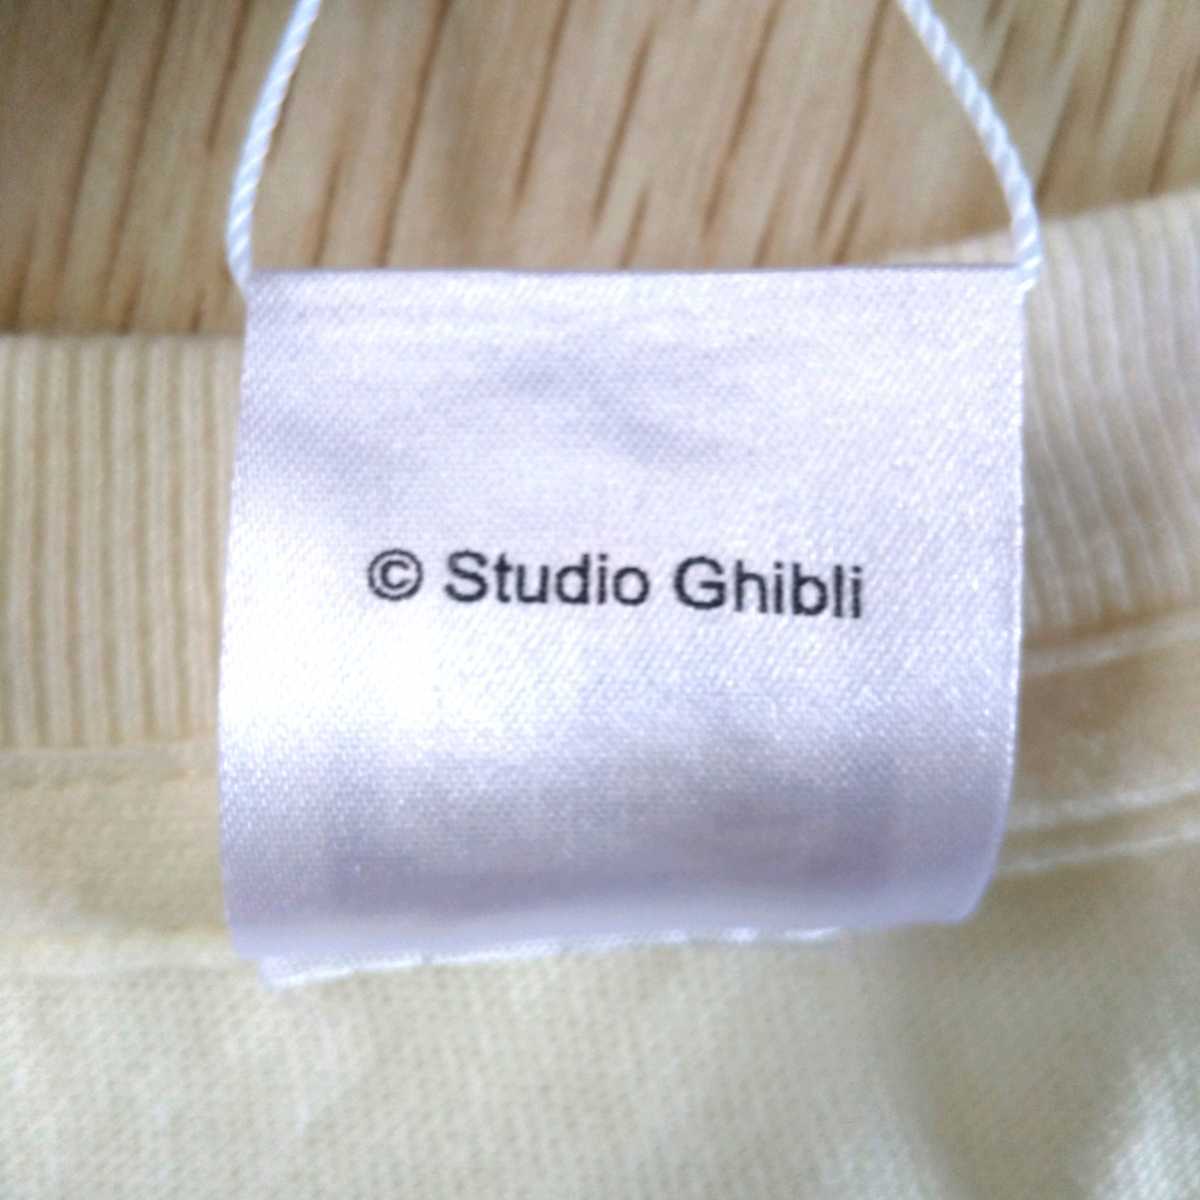 [ бесплатная доставка ] Ghibli park ограниченный товар лифт . футболка слоновая кость 